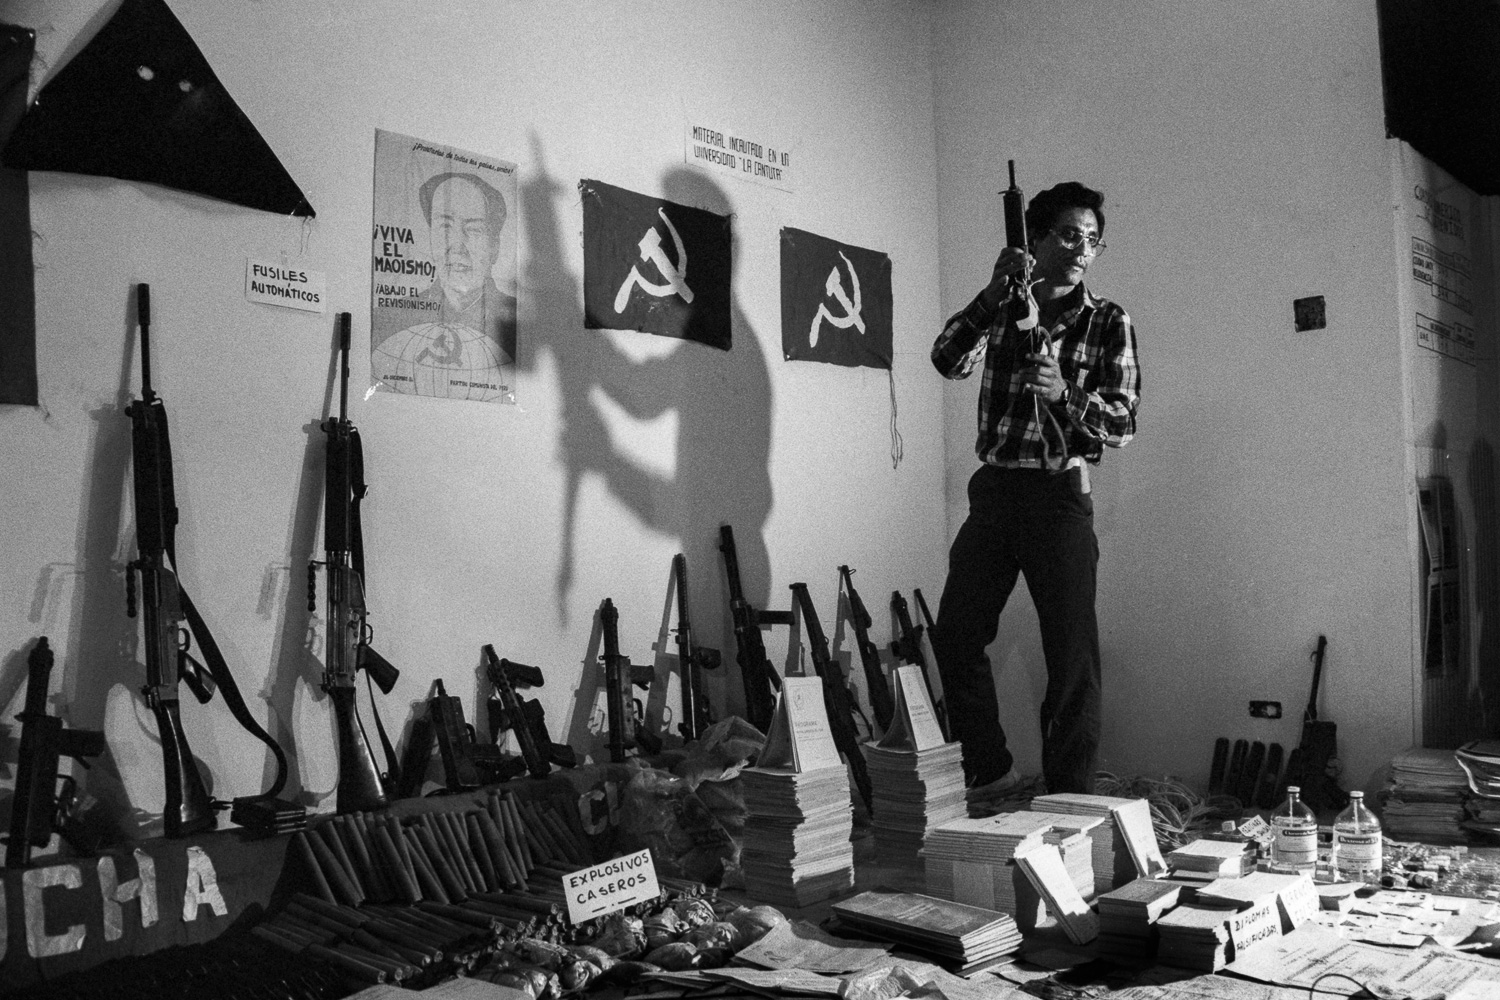 Incautación de armamento y propaganda subversiva presentados a los medios de comunicación. Lima, 1987. (Código: VI01-31)